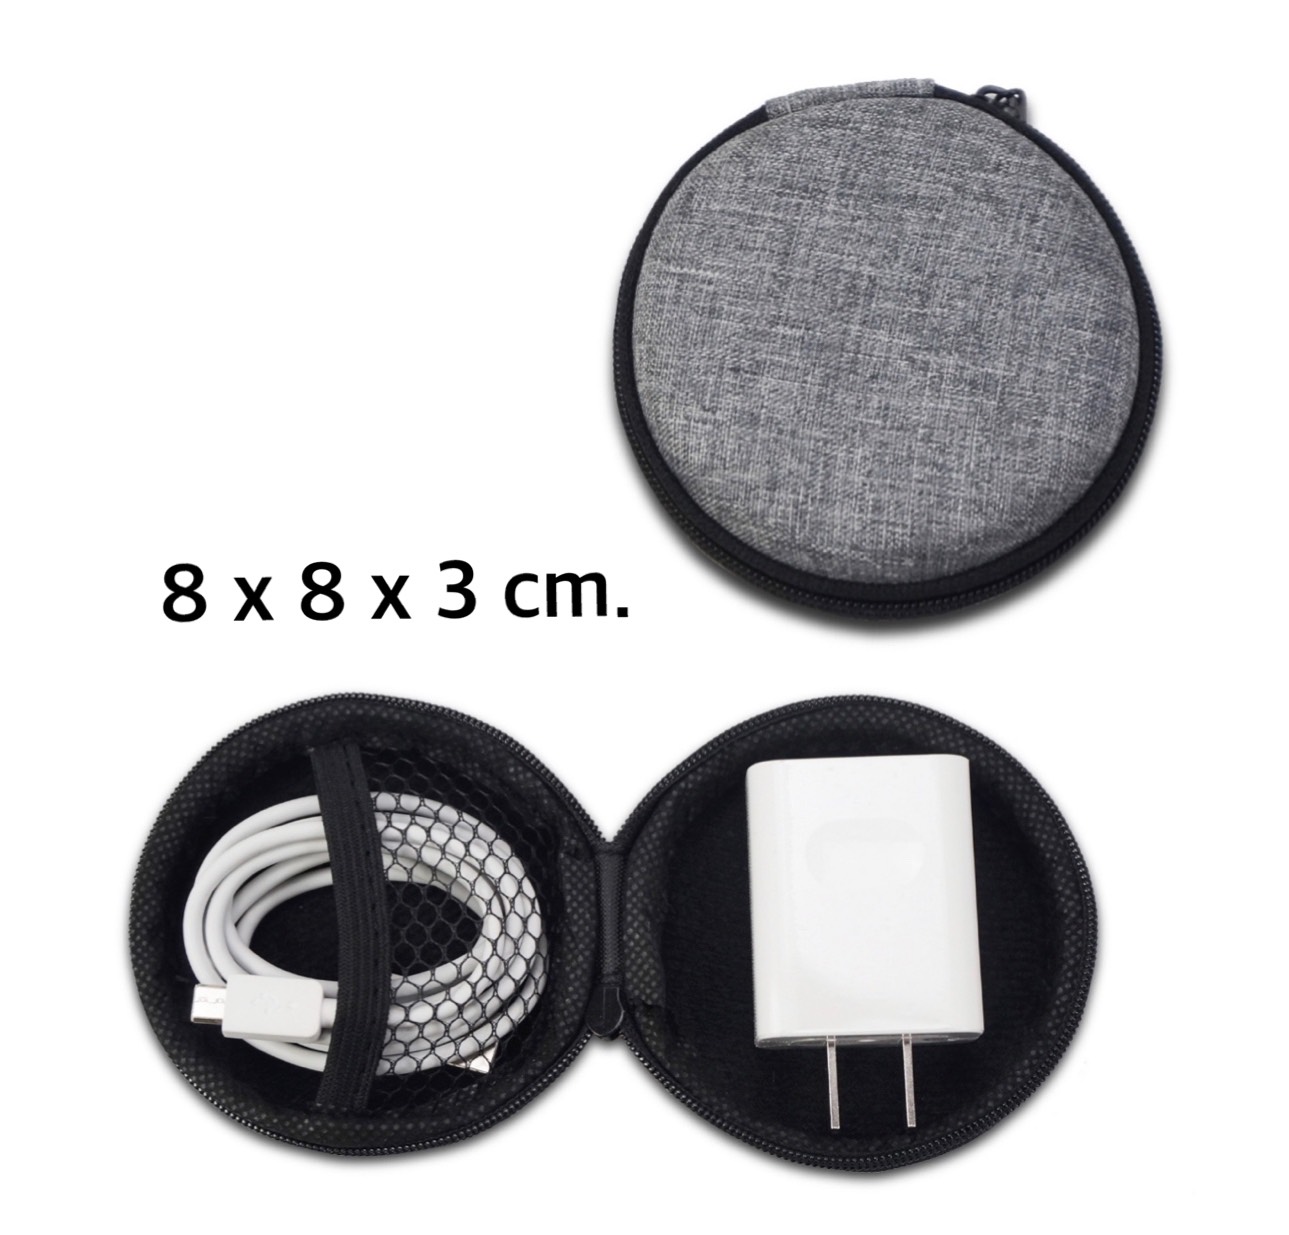 พร้อมส่ง    กล่องเก็บหูฟัง กล่องเก็บสายชาร์จ ( ราคา 15 บาท ) กล่องใส่ของ    มี 7 สีค่ะ กล่องใส่สายหูฟัง กระเป๋าเก็บสายชาร์จ USB แฟลชไดรฟ์ กล่องอเนกประสงค์ พกพาสะดวก ขนาด: 11 X 7 X 4 CM  ~   ขนาด: 11 X 7 X 4 CM ~   กล่องใส่สายหูฟัง  ~   กระเป๋าเก็บสายชาร์จ